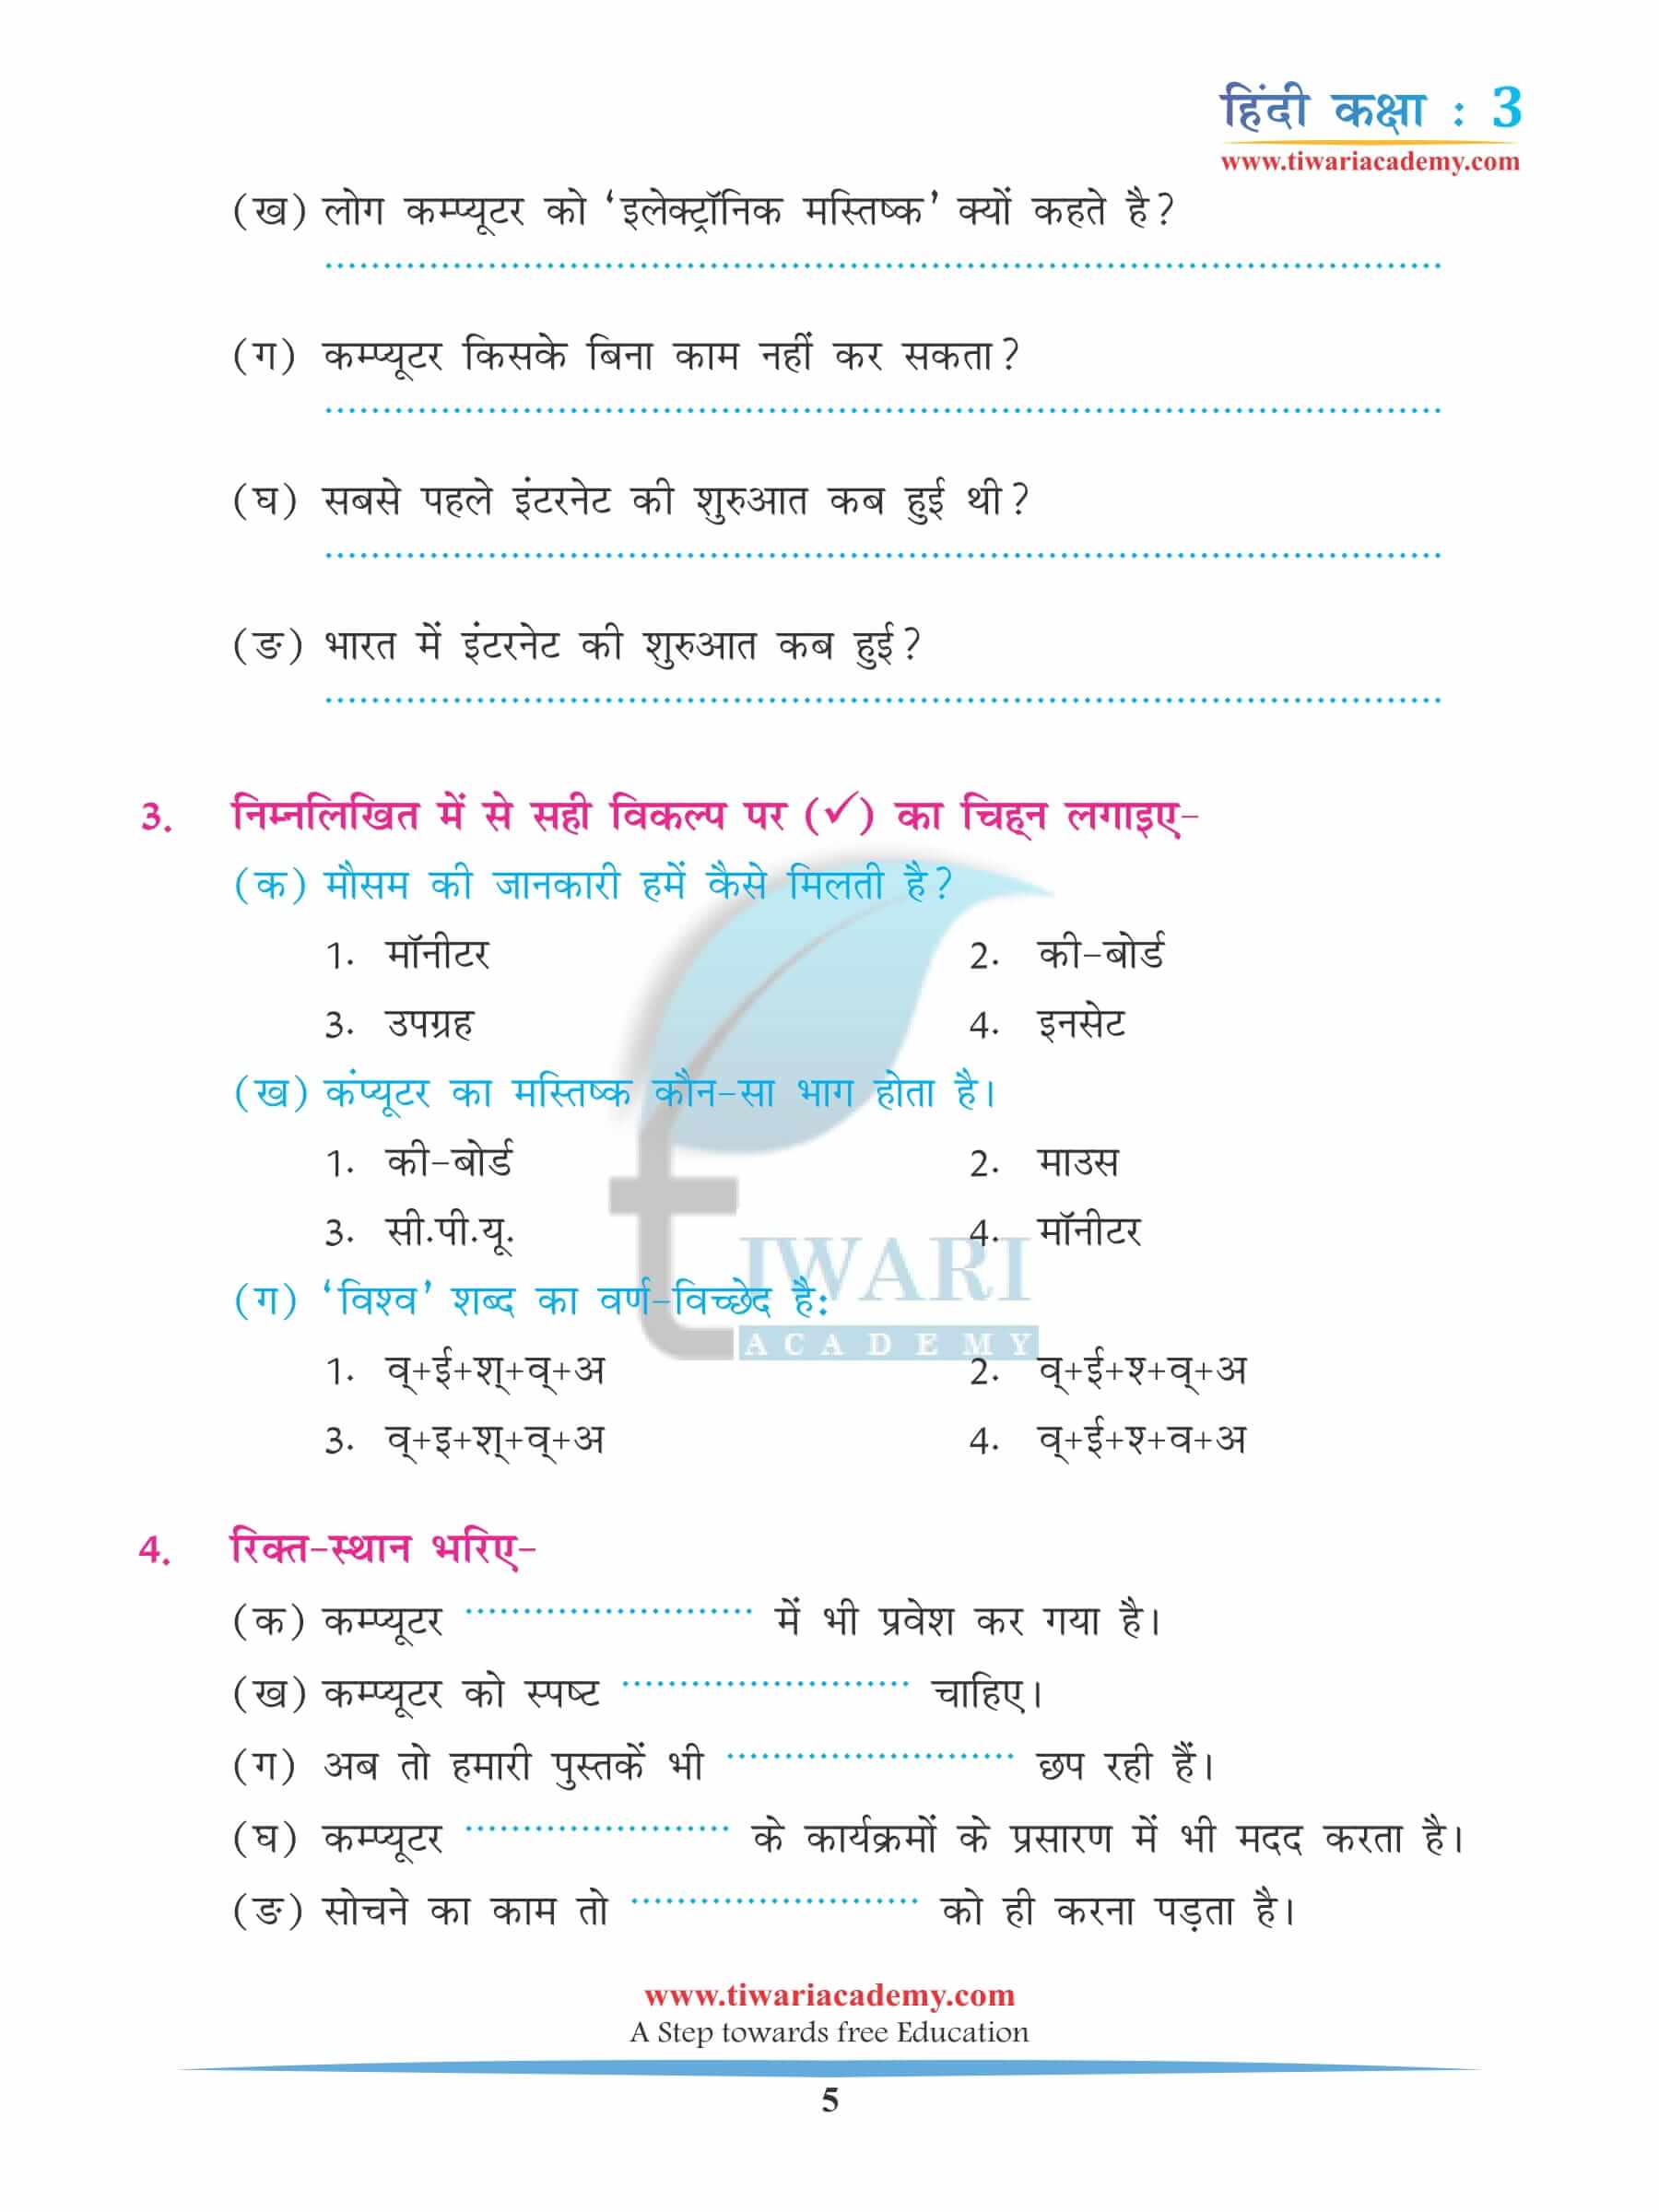 कक्षा 3 हिंदी अध्याय 14 अभ्यास के लिए प्रश्न